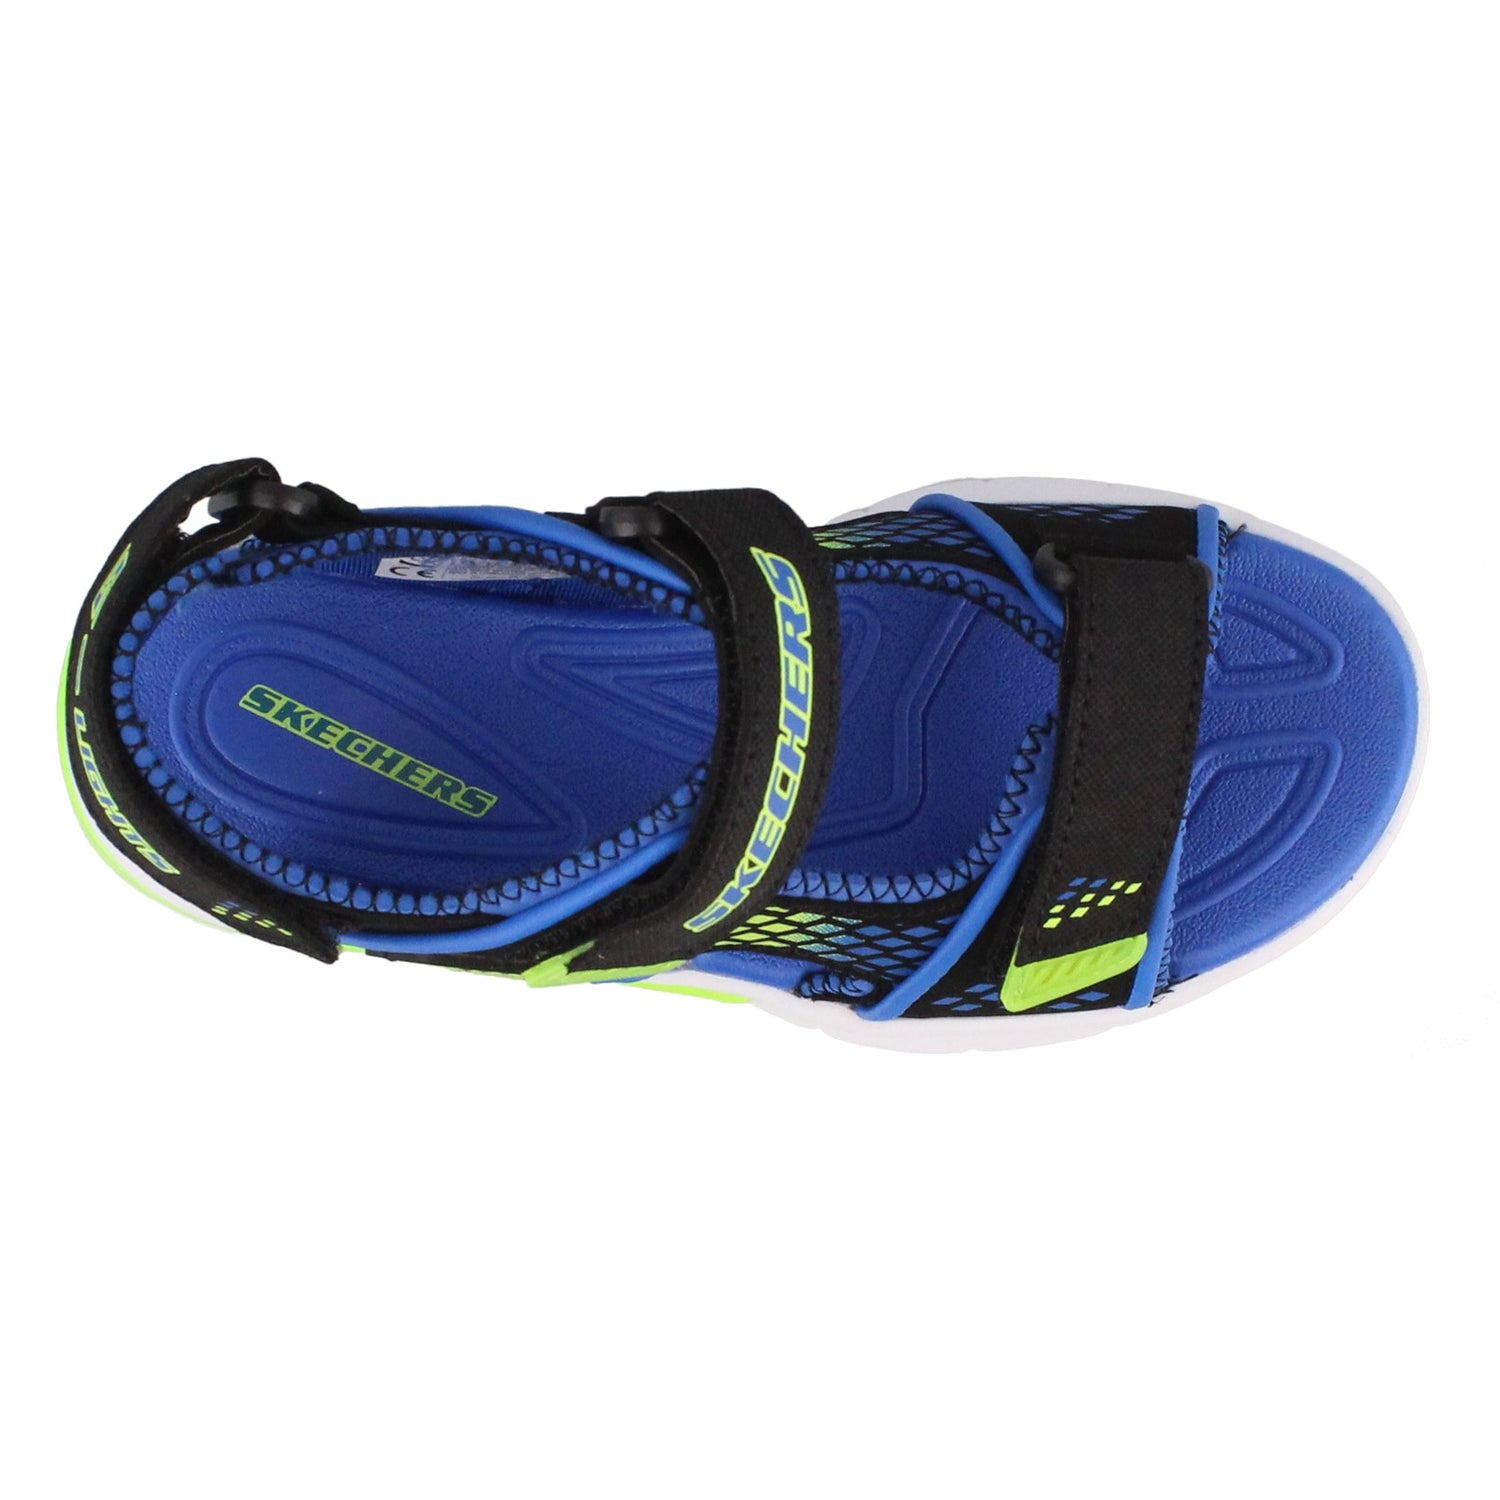 Peltz Shoes  Boy's Skechers E II Beach Glower Sandals BLACK BLUE 90558L-BBLM